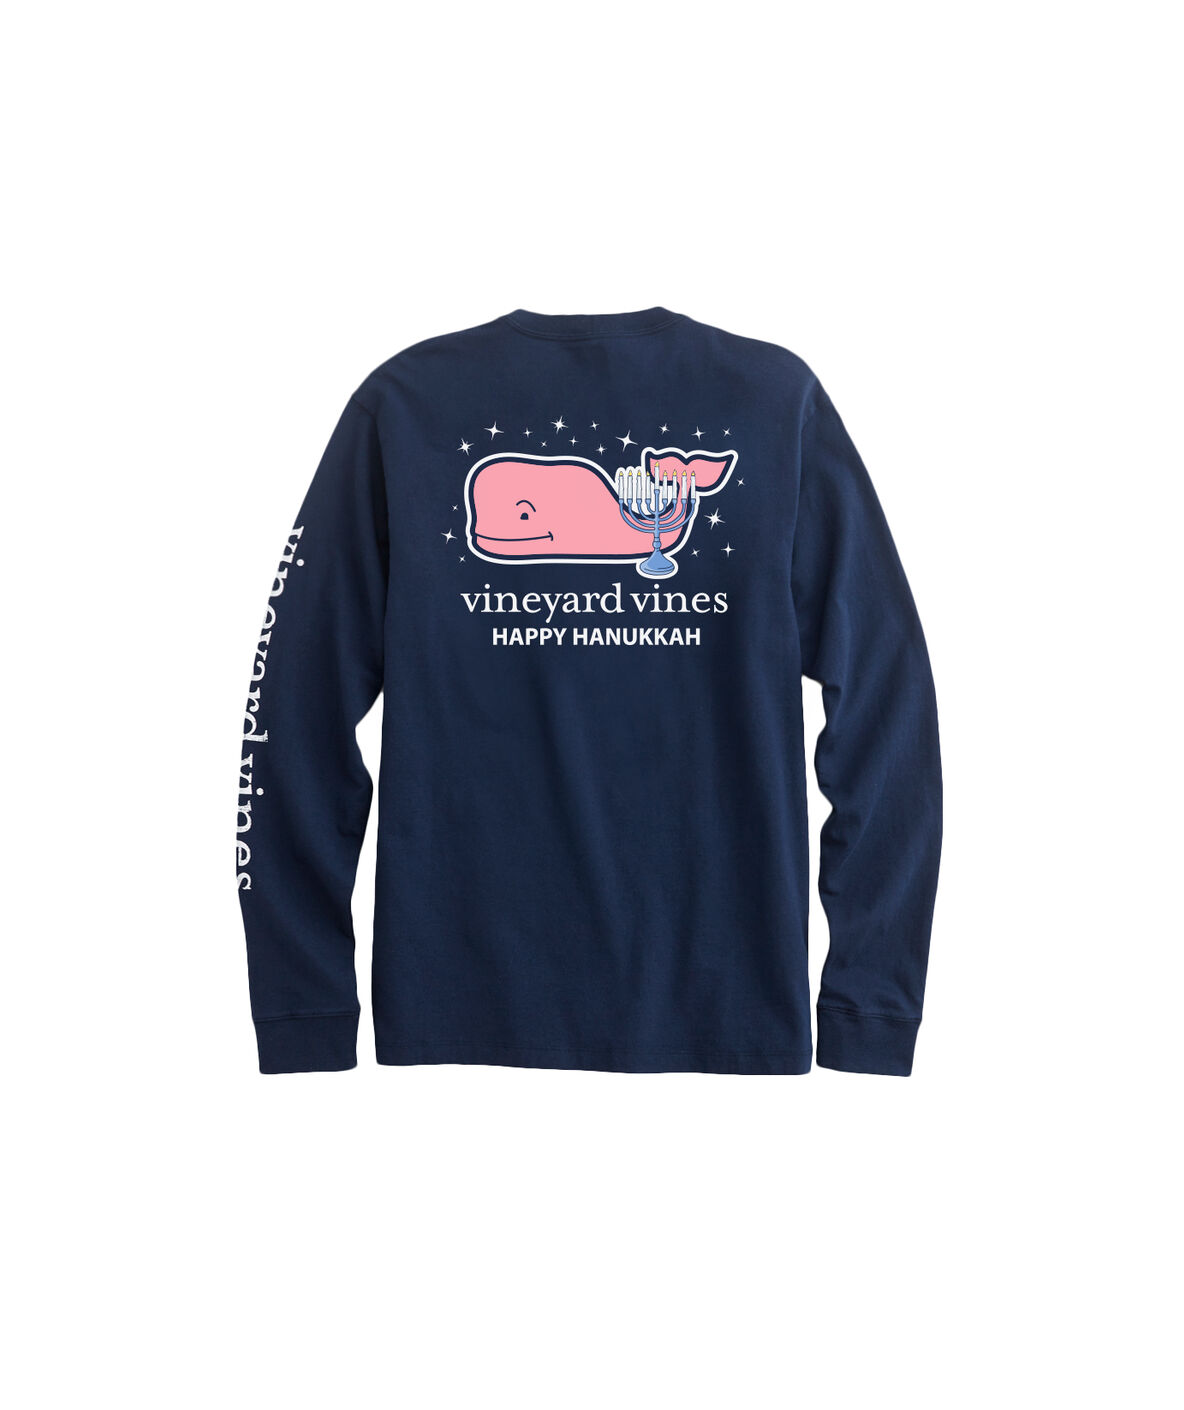 Shop Long-Sleeve 2019 Hanukkah Whale Pocket T-Shirt at vineyard vines